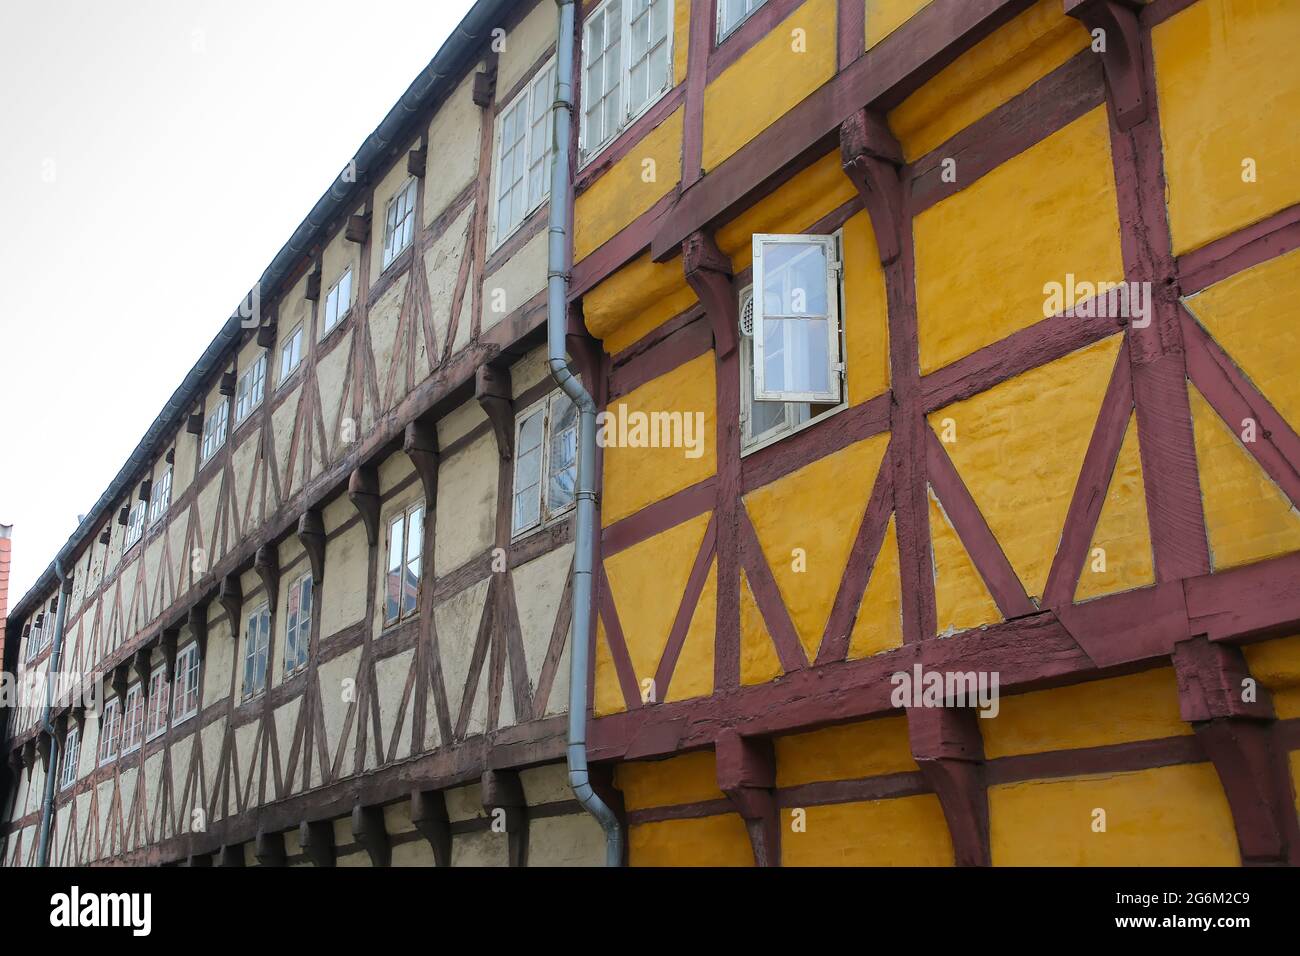 Bâtiments historiques en bois à colombages dans le centre de la ville, Aalborg, Danemark, Europe. Banque D'Images